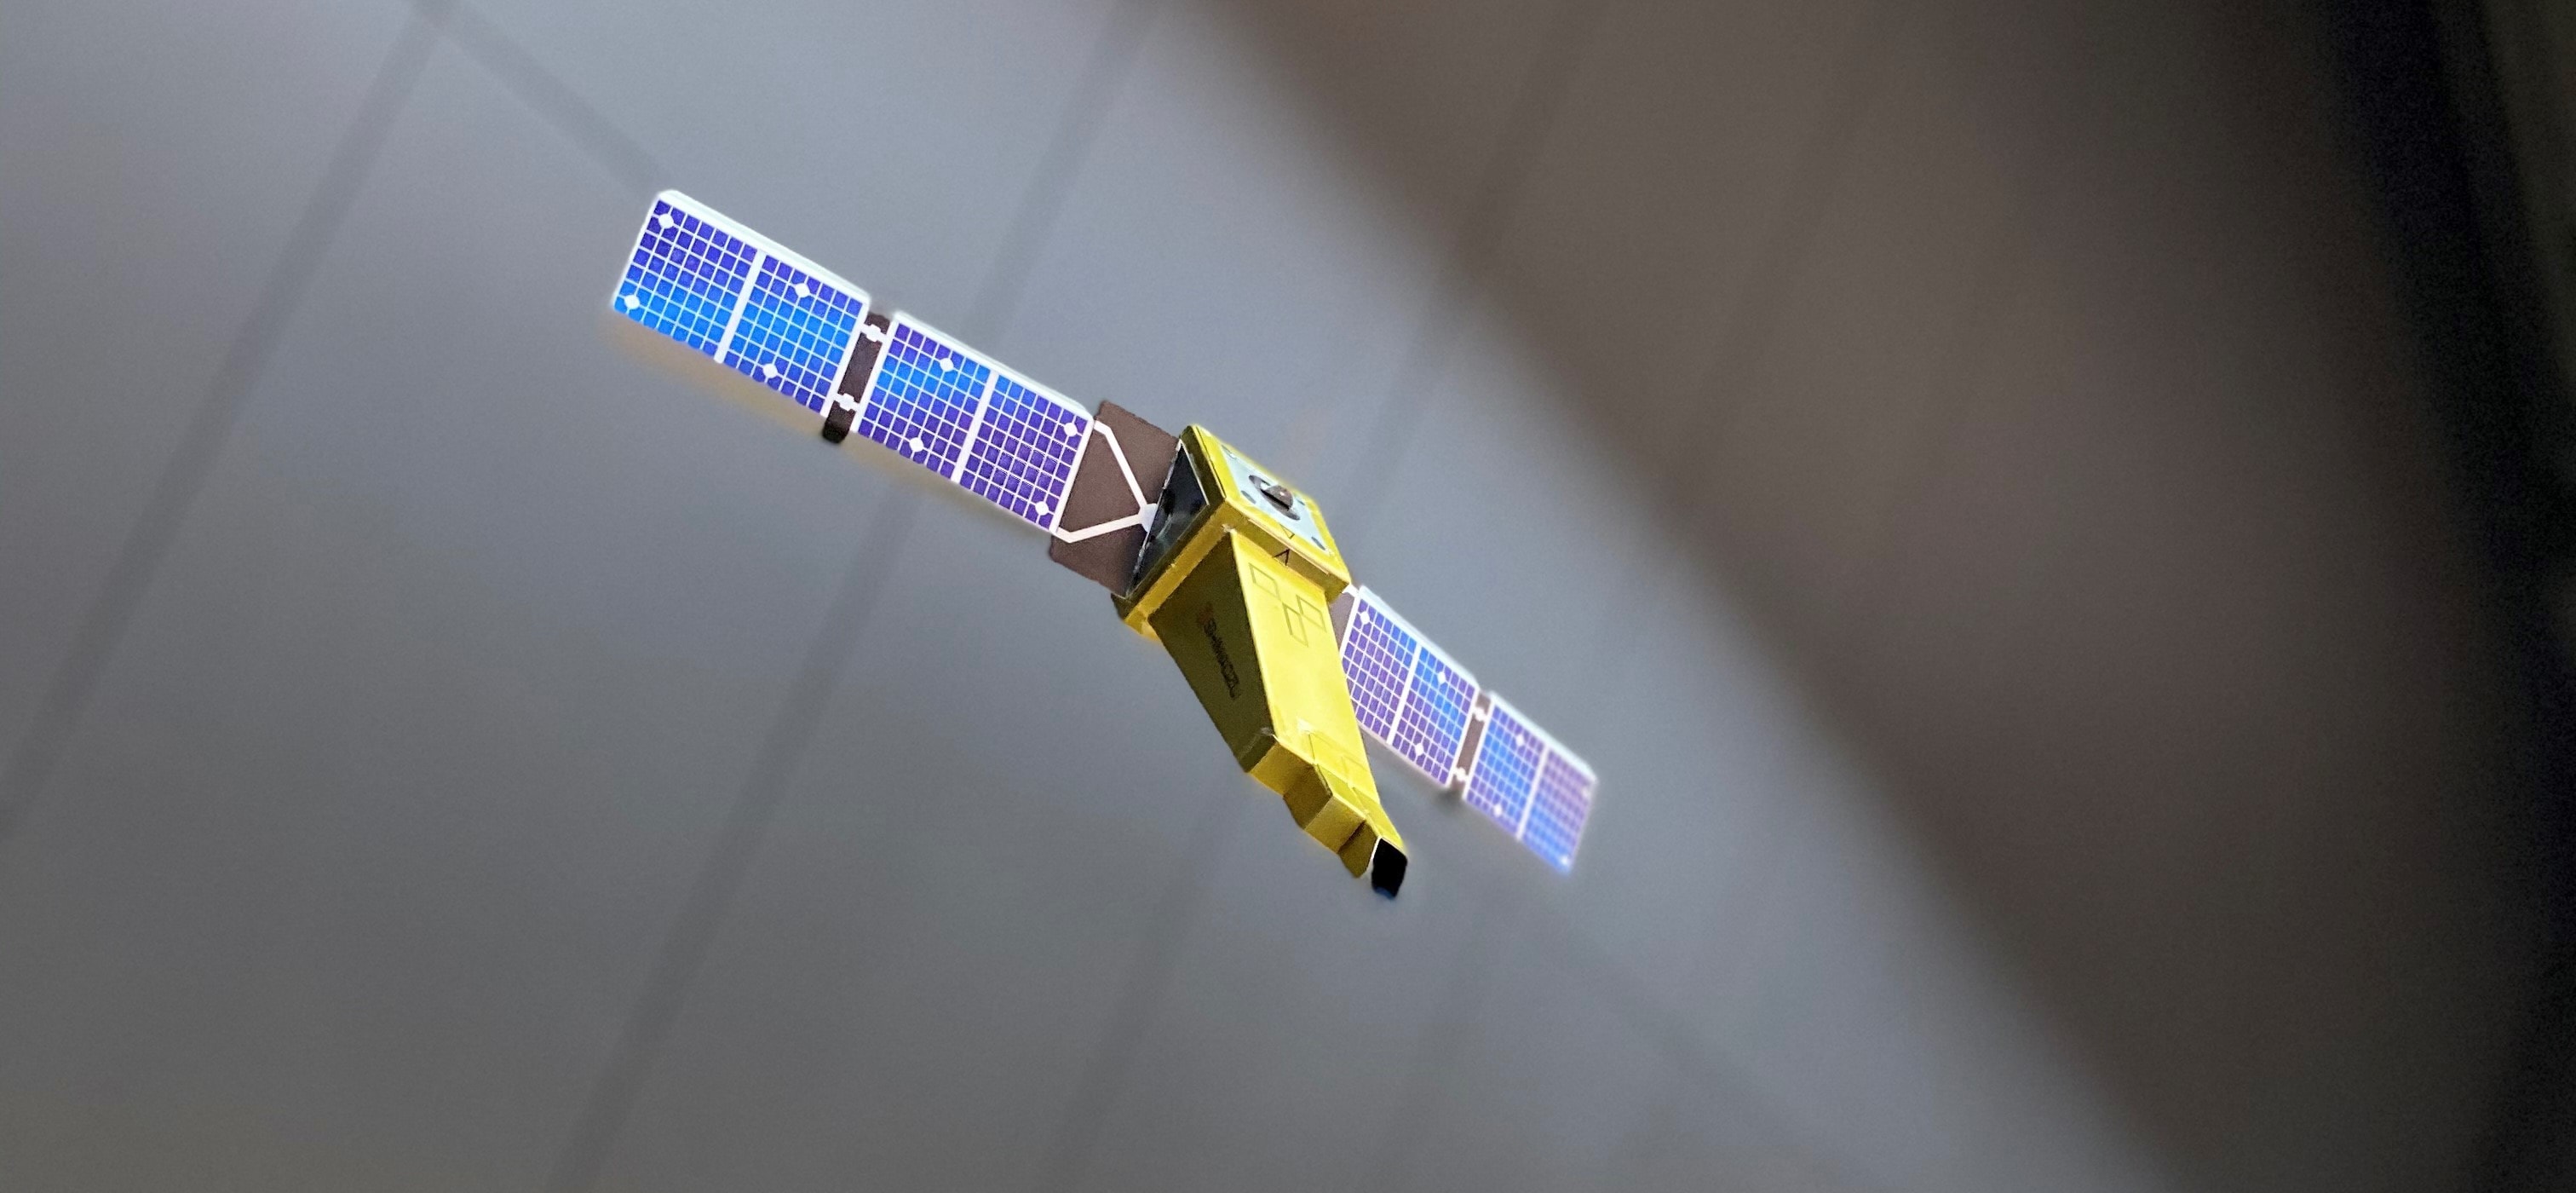 惑星分光観測衛星「ひさき」のペーパークラフト